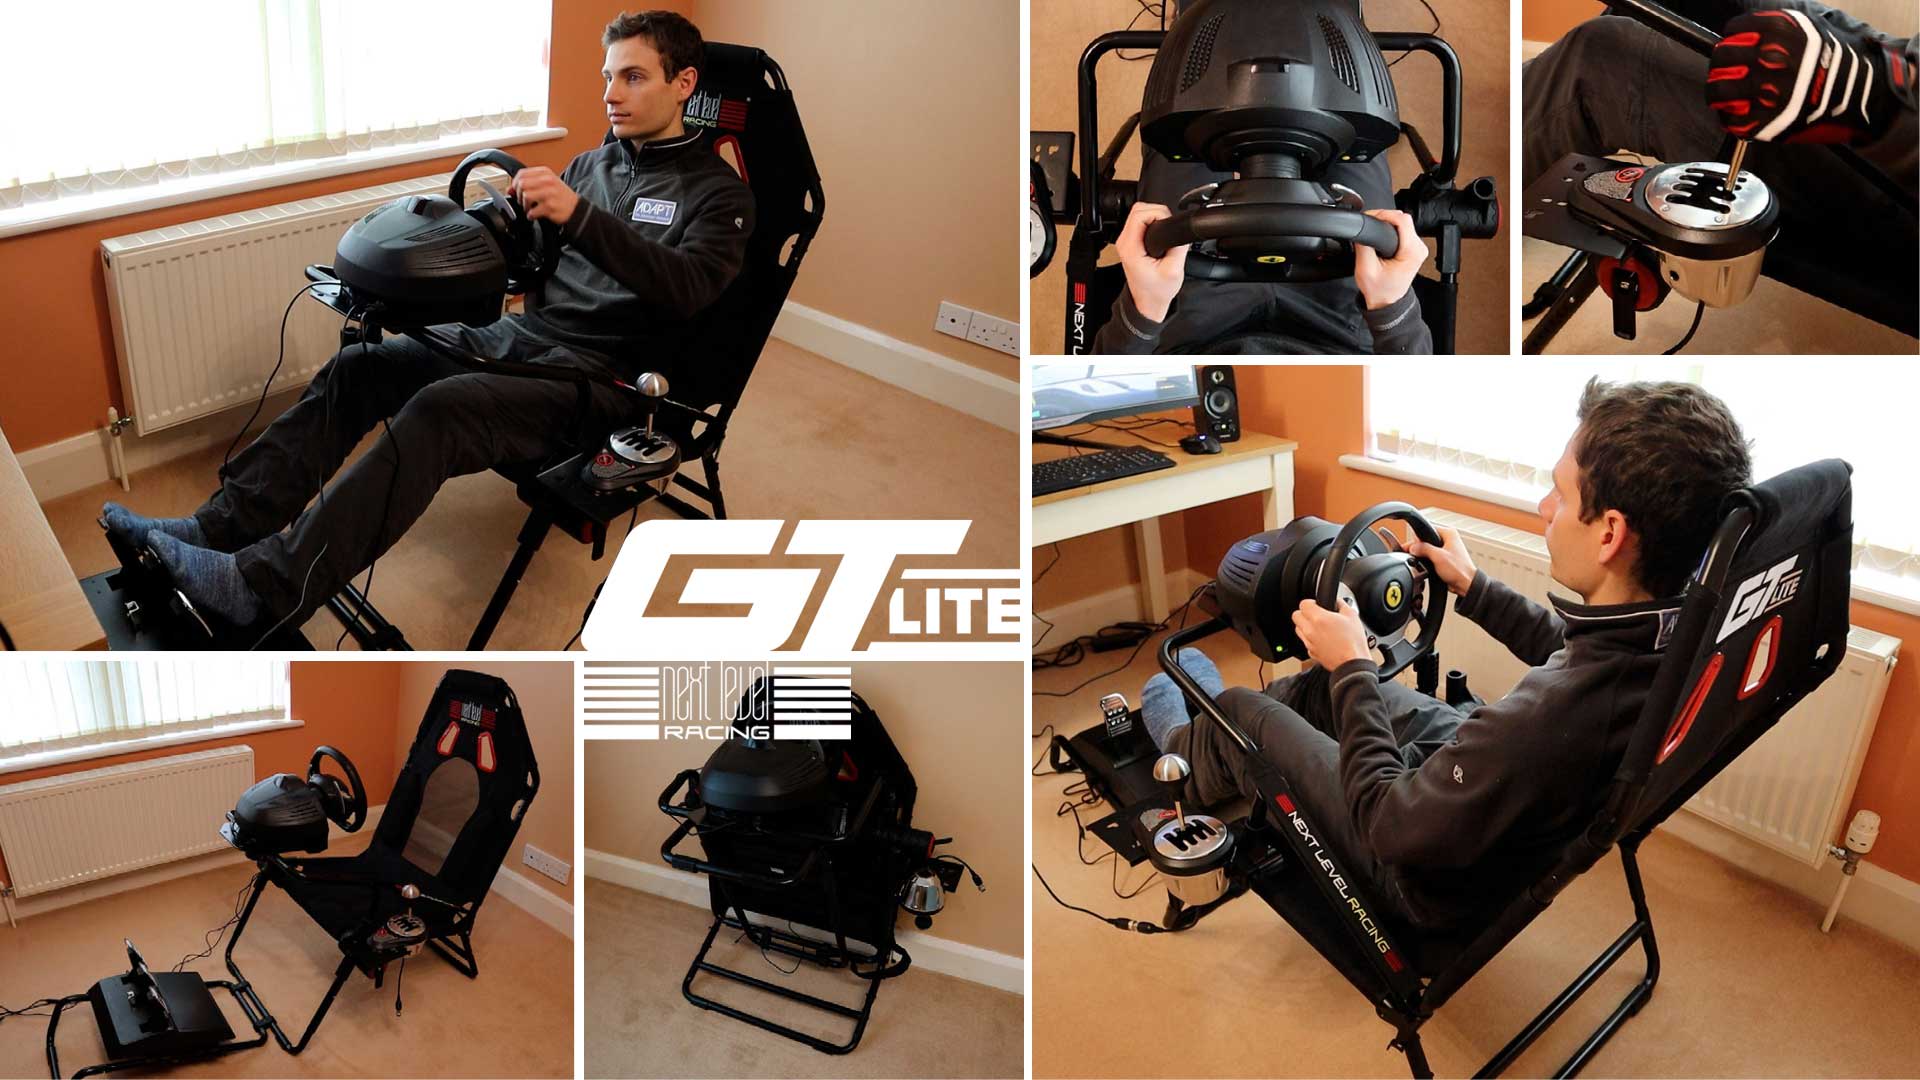 Playseat Challenge Racing Seat & Thrustmaster T-GT Racing Wheel